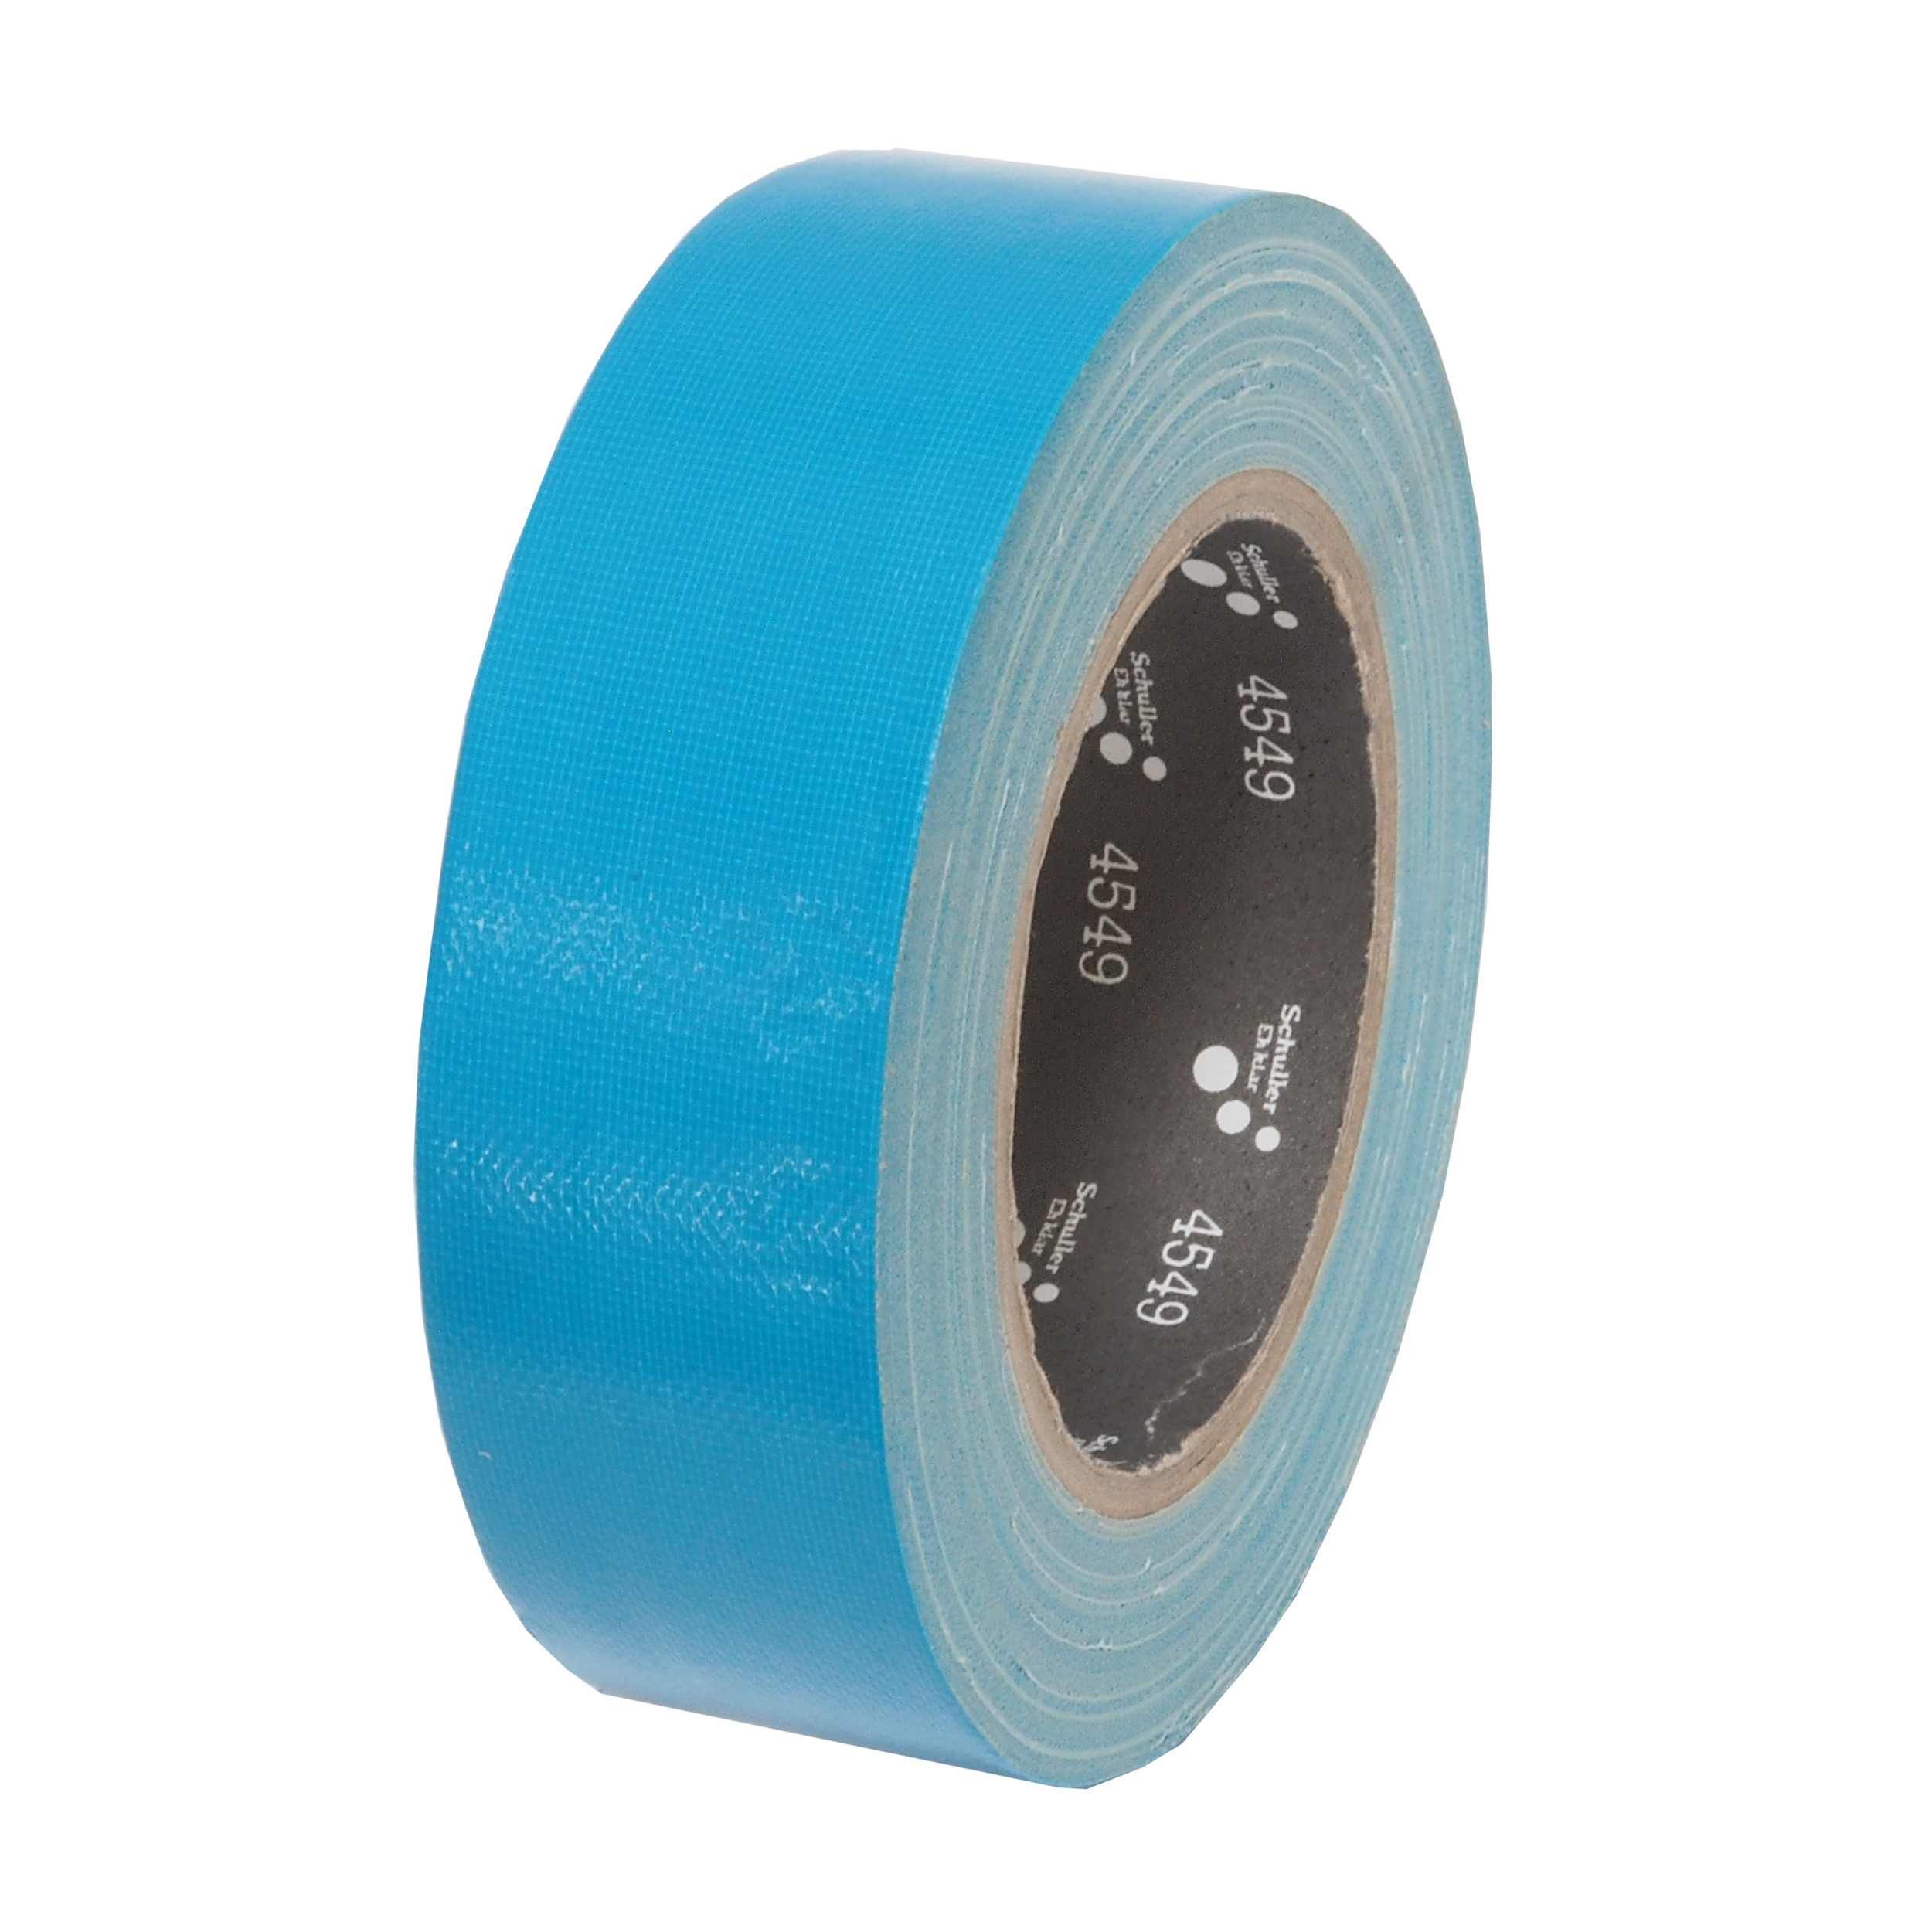 páska lepící, tkaninová, UV odolná, modrá, 50 mm x 25 m 0.45 Kg TOP Sklad4 701410 11